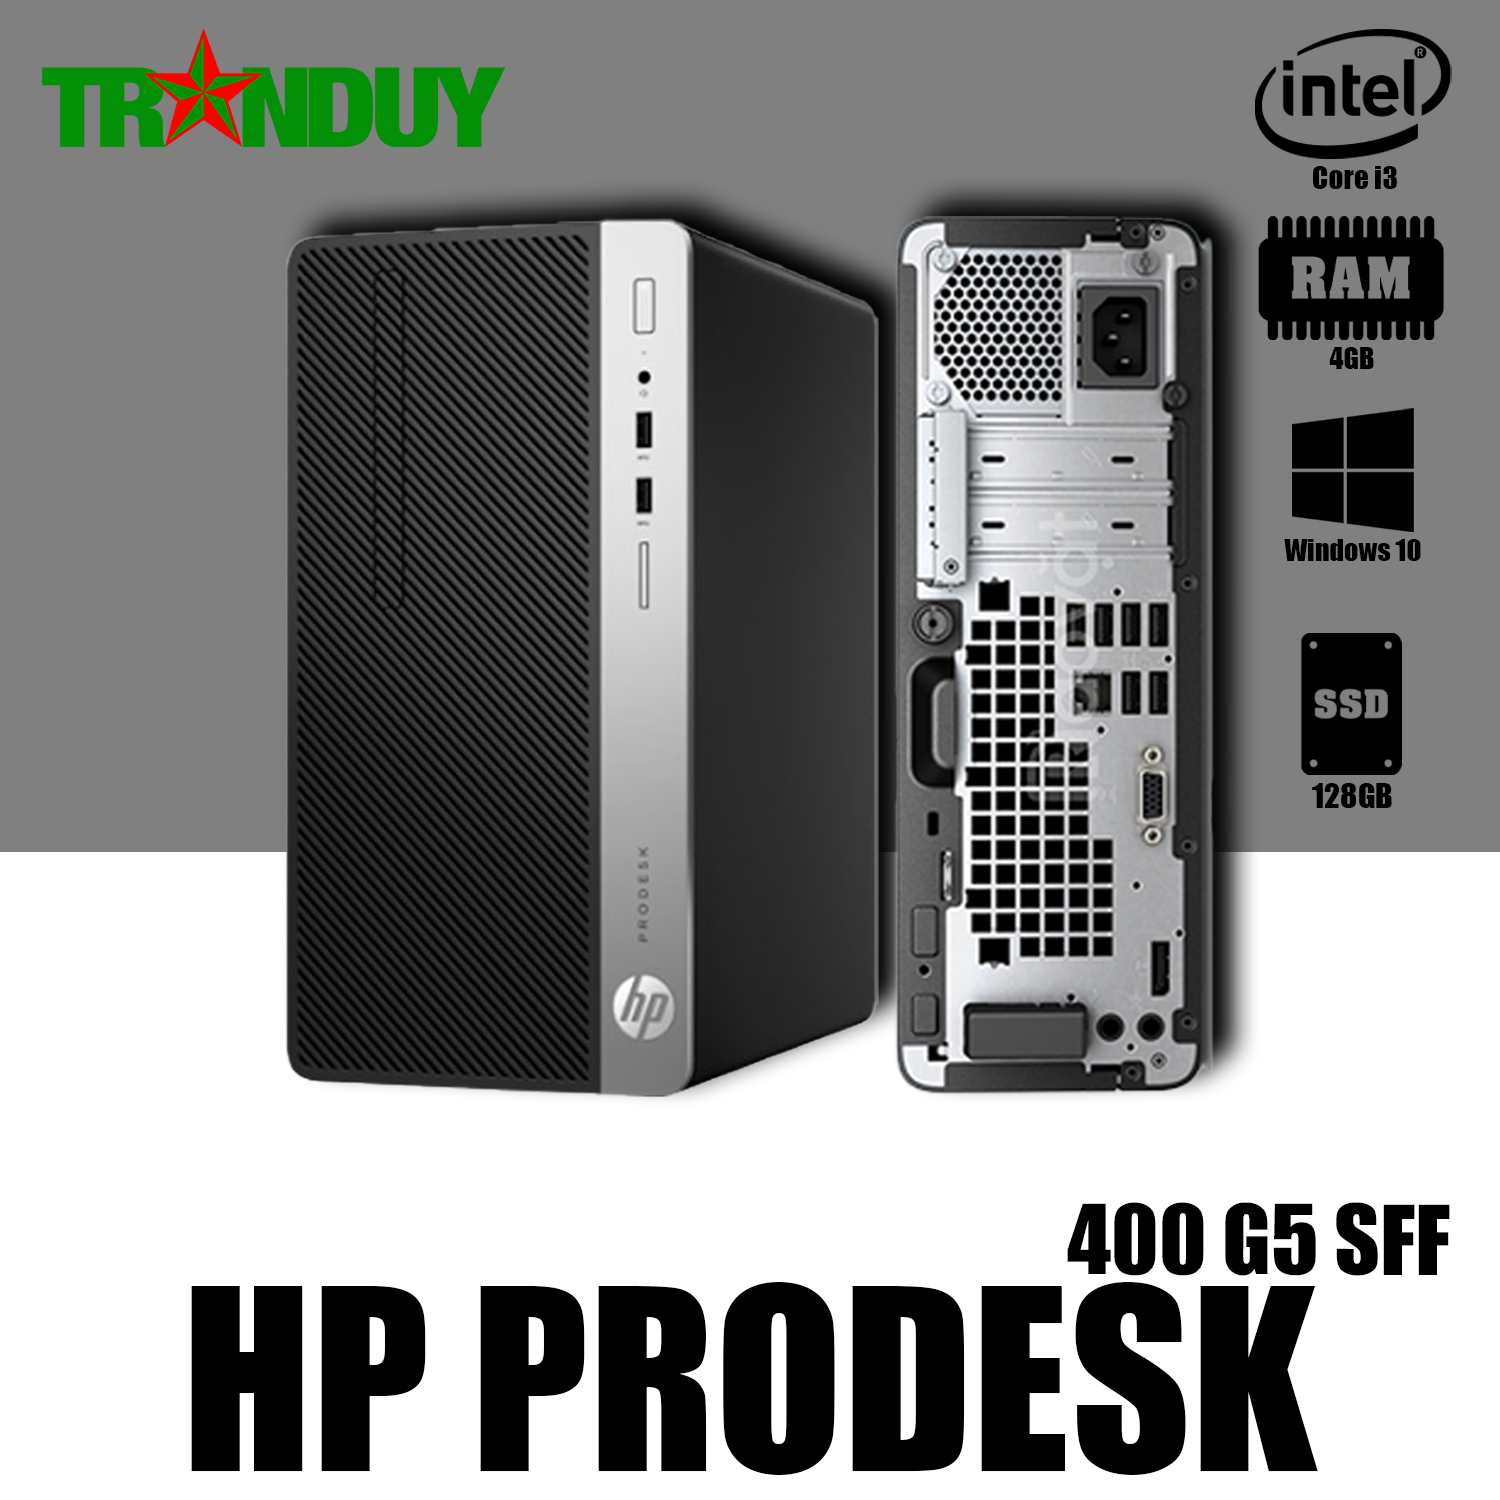 Hp prodesk core i3 7100 4gb 128gb